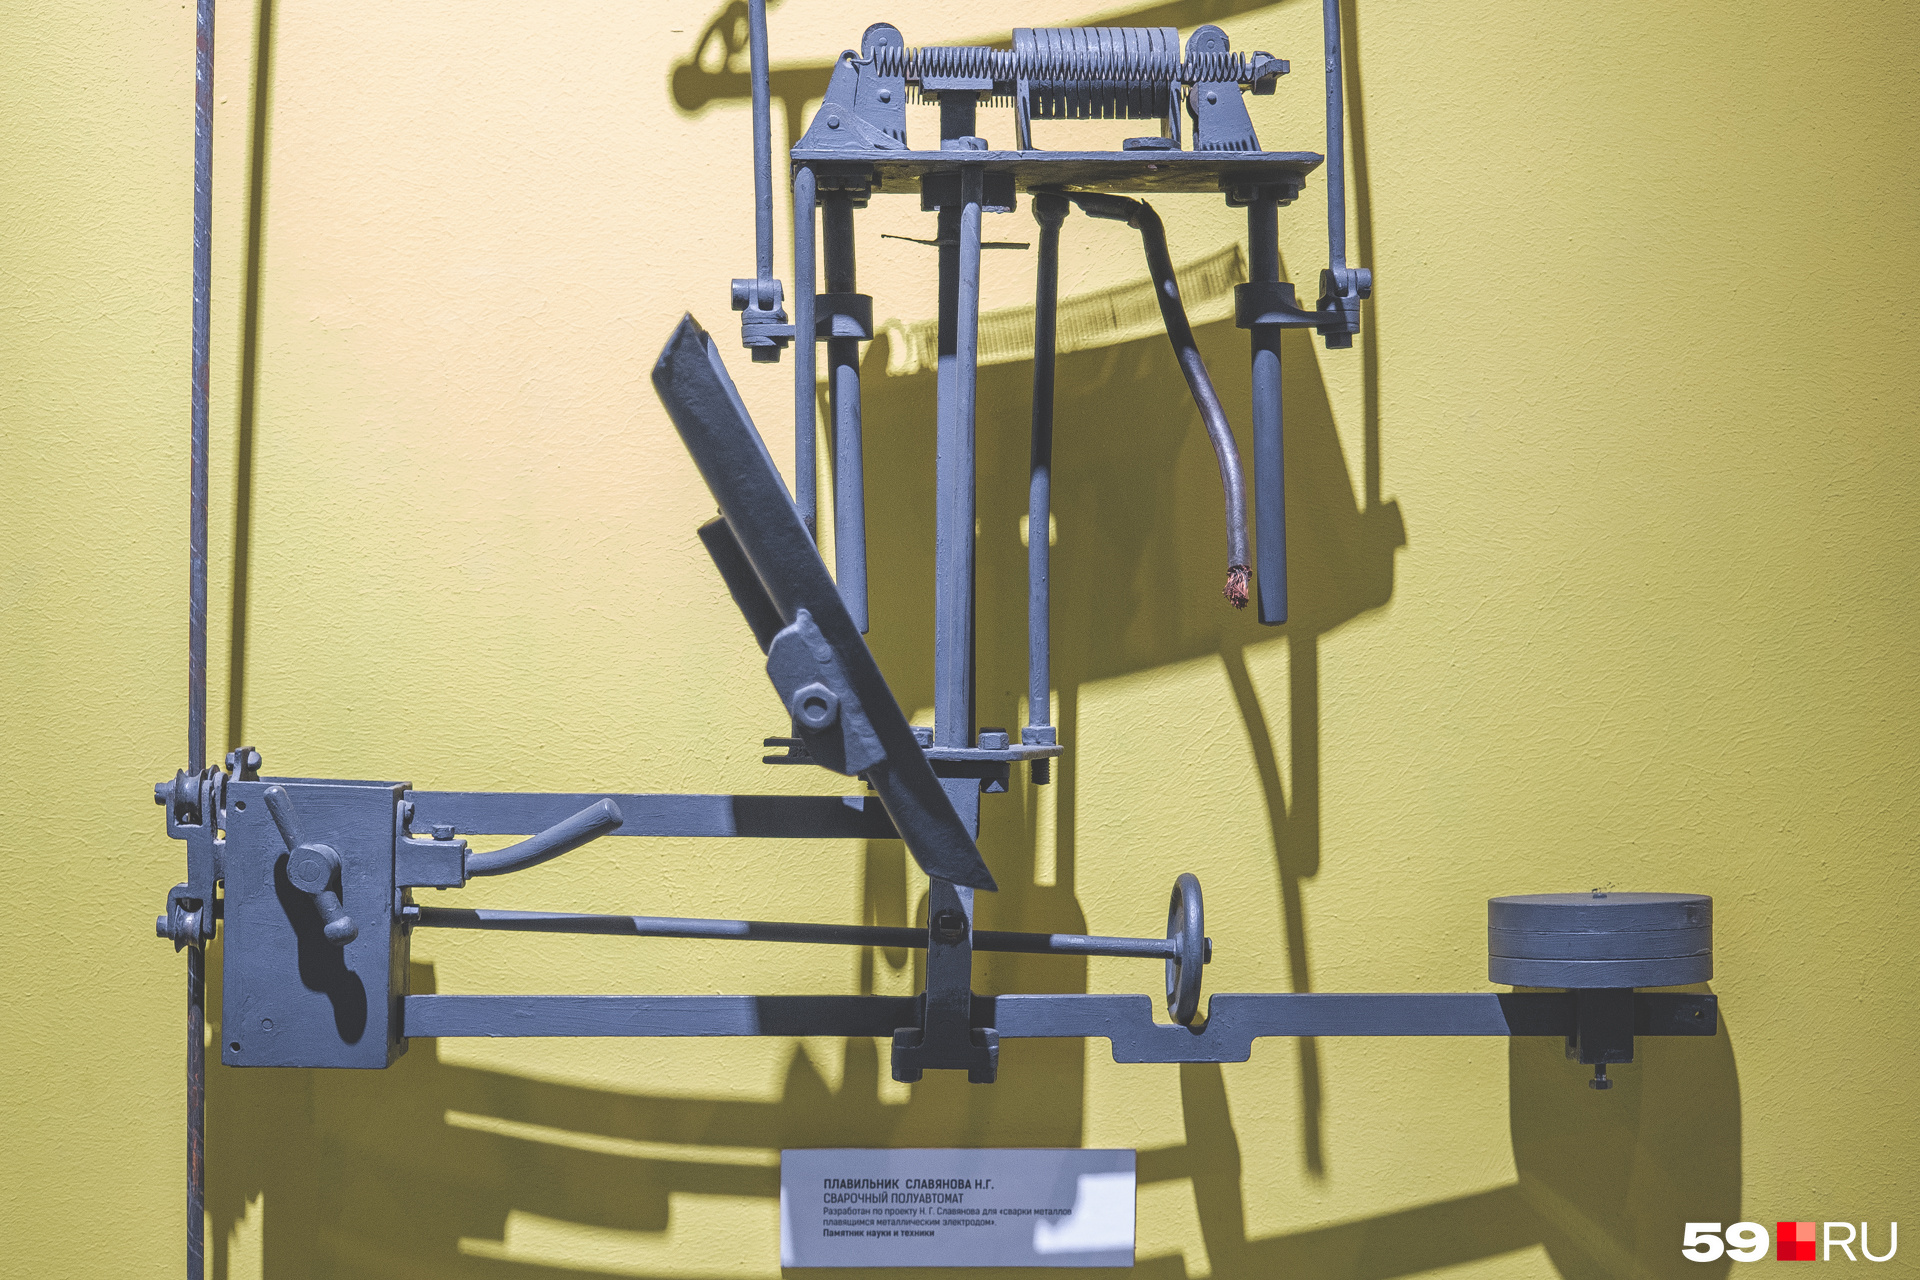 Электроплавильник Славянова — тот самый первый сварочный аппарат